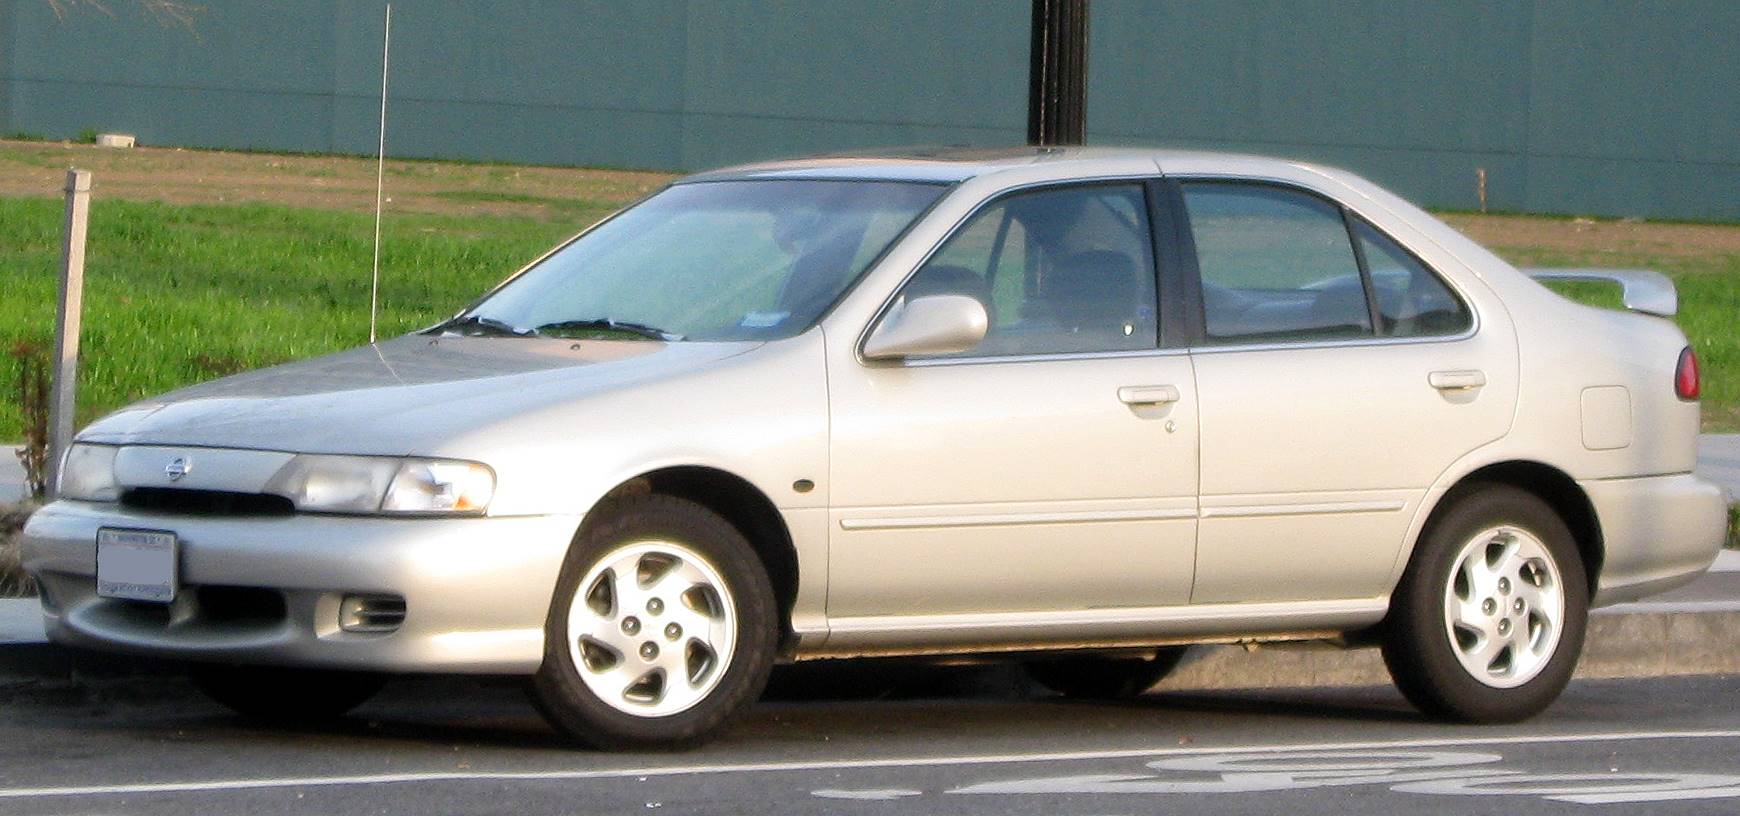 1999 Nissan Sentra 4-Door Sedan GXE Automatic